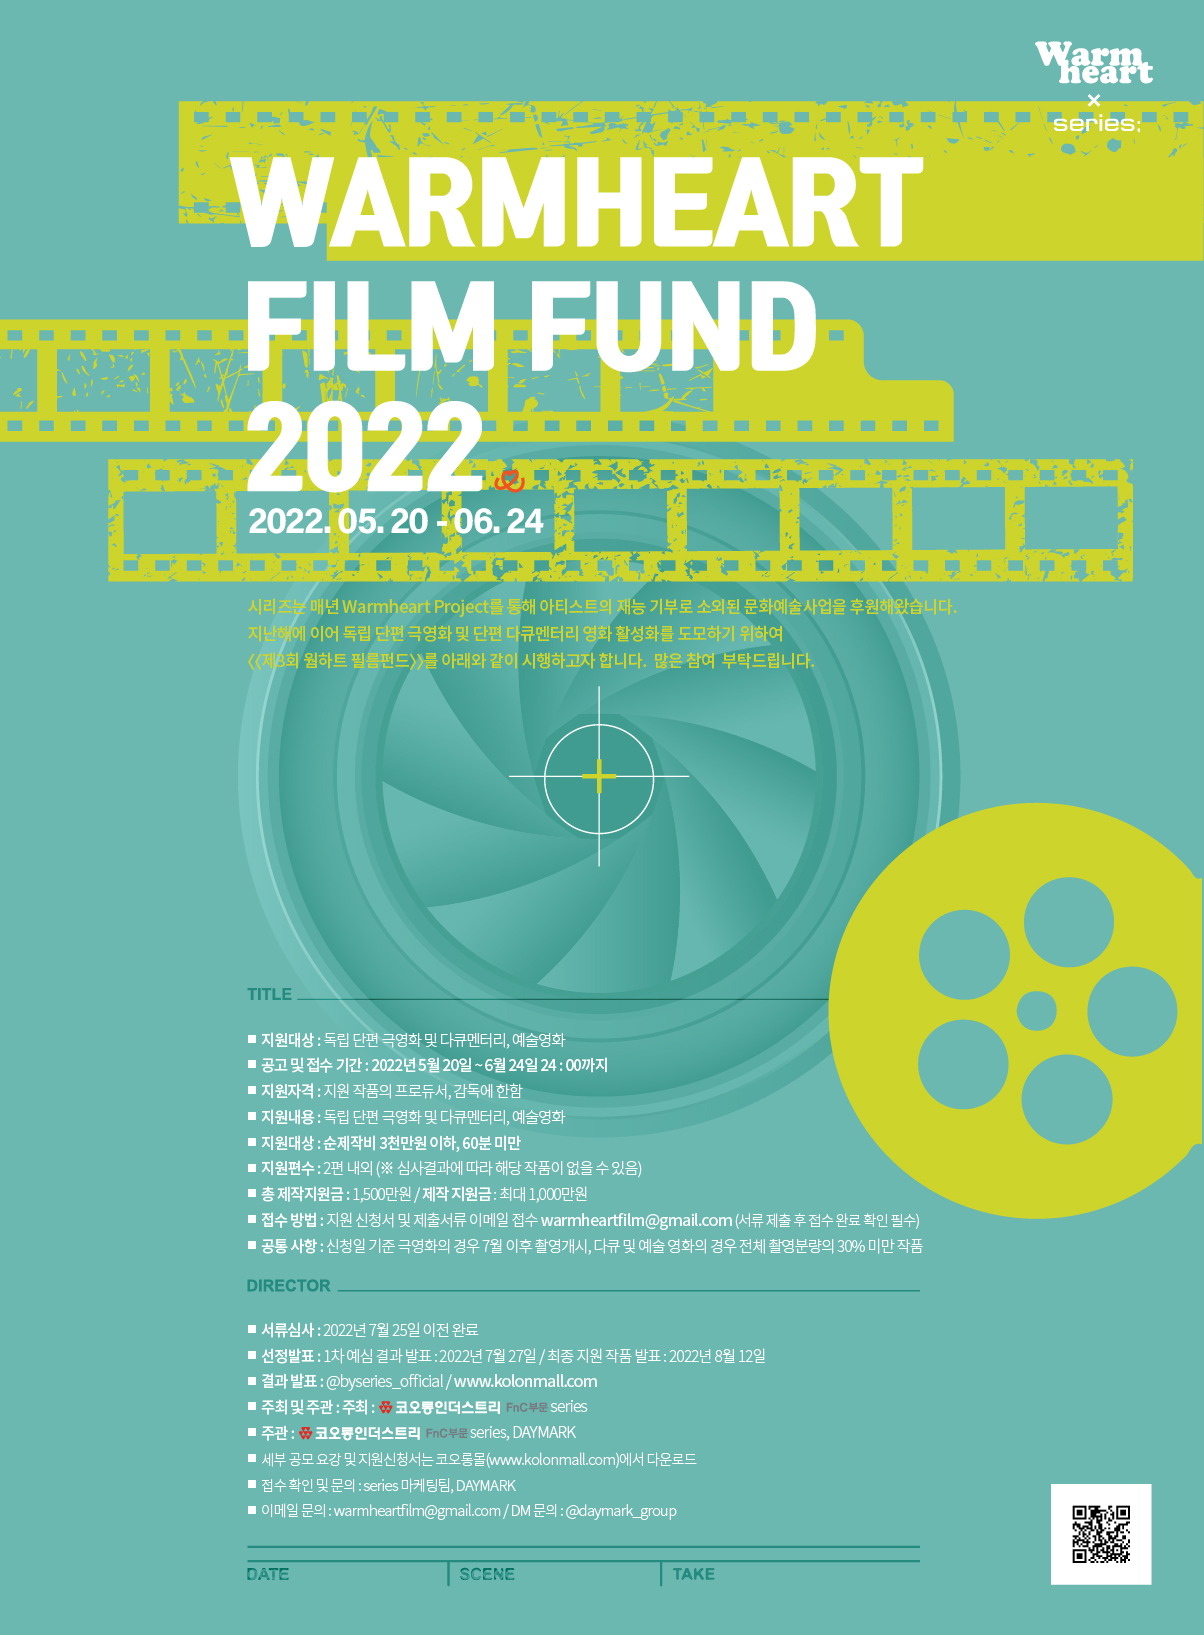 2022년 웜하트 필름펀드 공모전